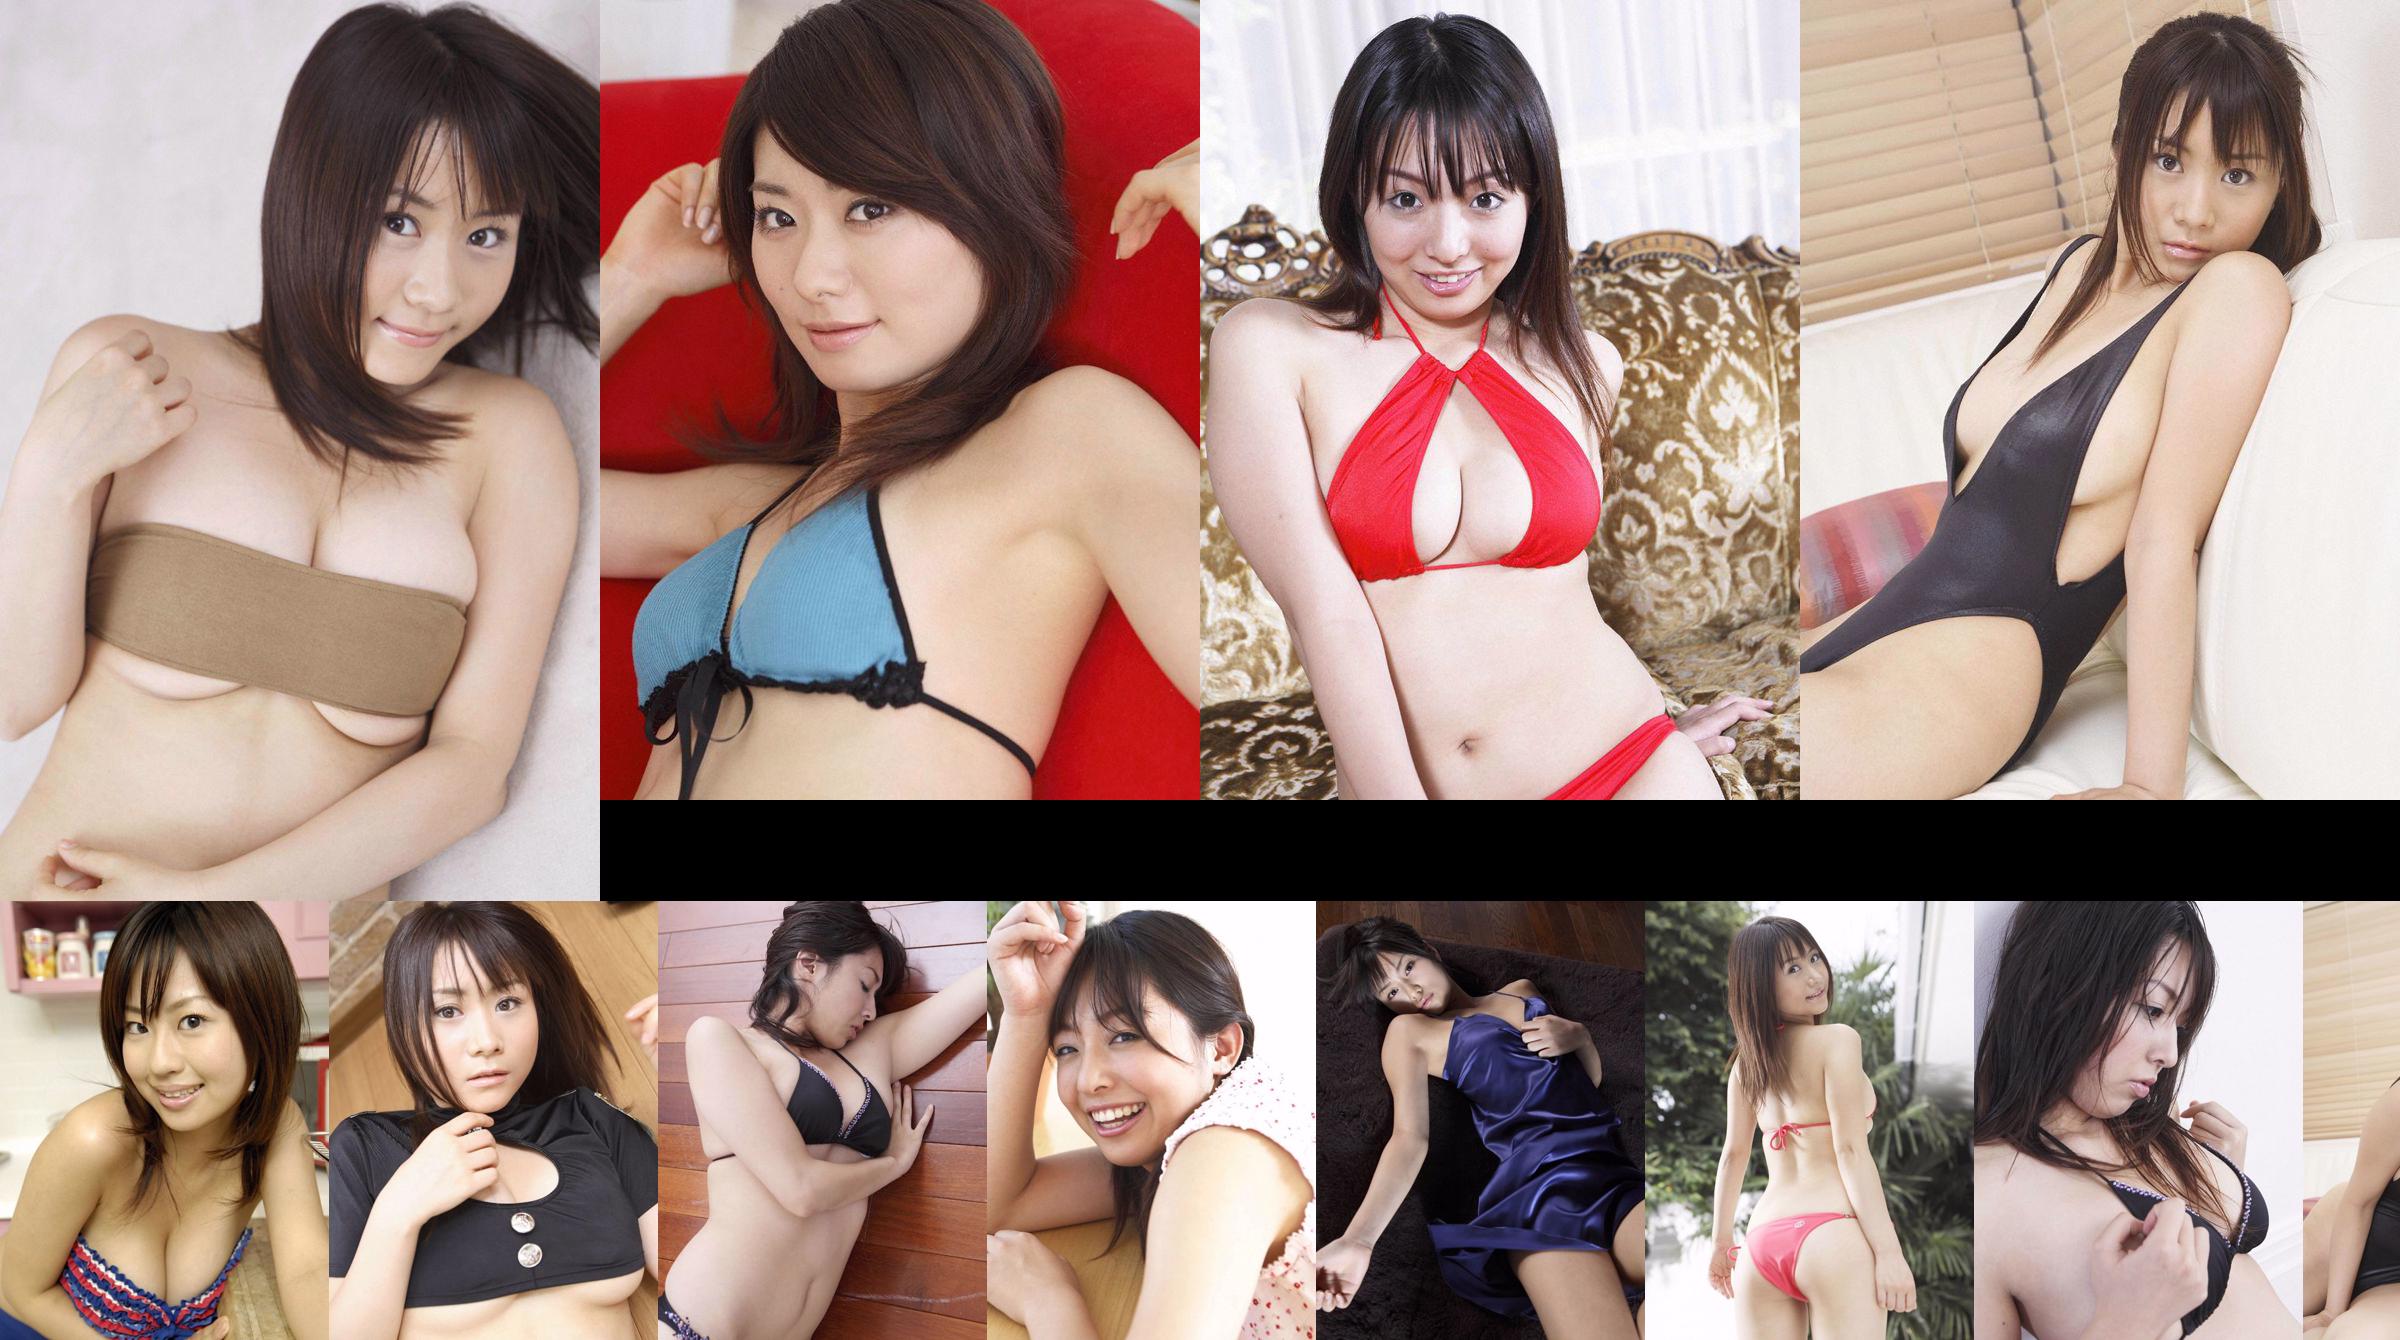 [Wanibooks] NO.37 Ai Arakawa, Hitomi Kaikawa, Hitomi Kitamura, Naomi I, Chii Matsuda Photo Collection No.10b9f9 Page 1